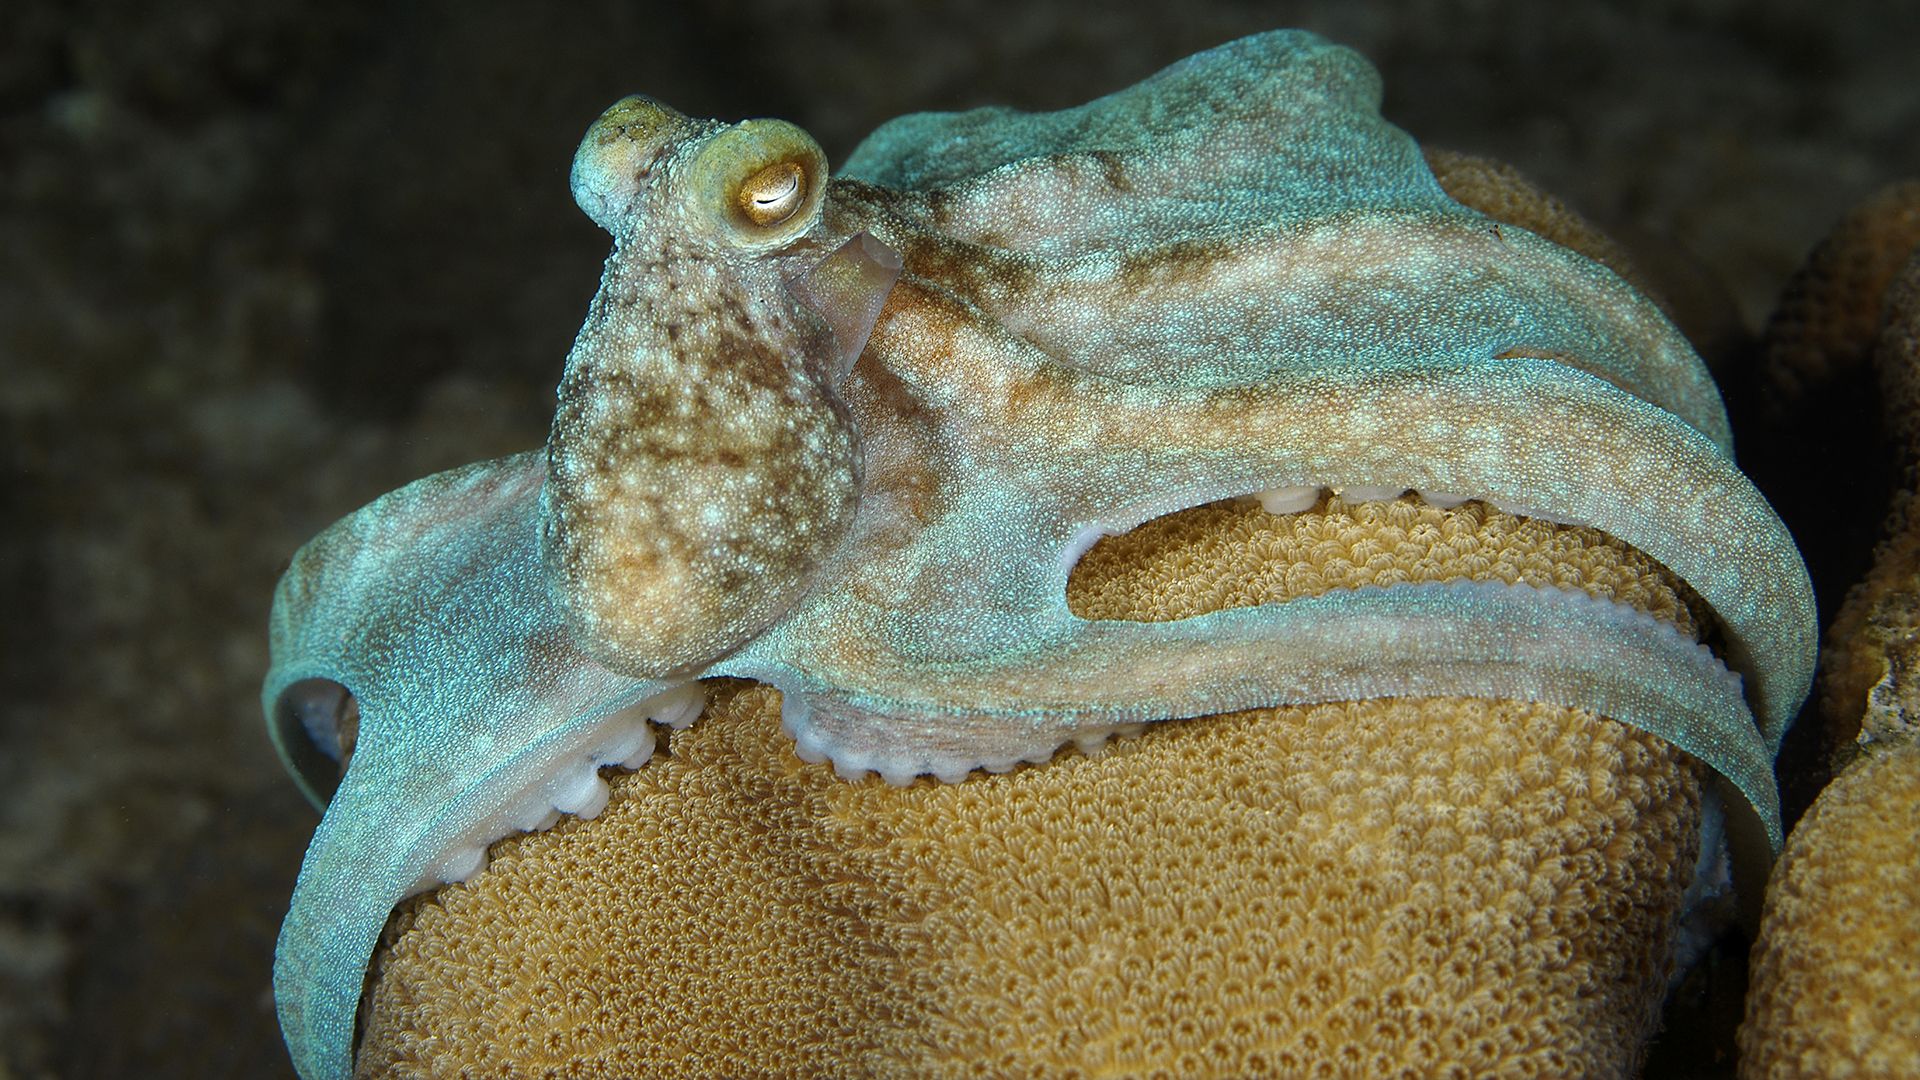 карибский рифовый осьминог